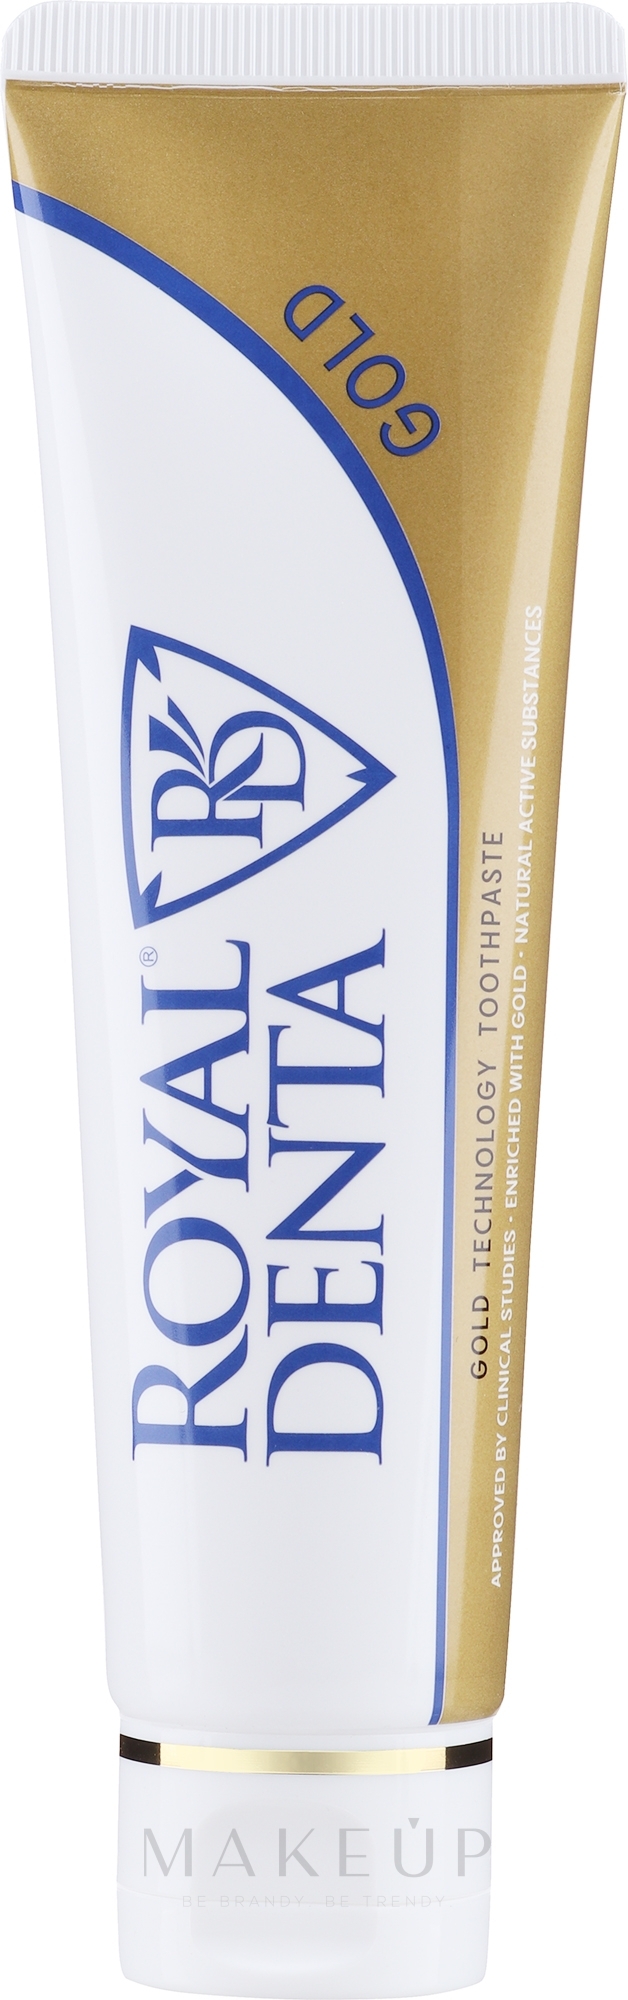 Zahnpasta mit Goldpartikeln - Royal Denta Gold Technology Toothpaste — Bild 130 g